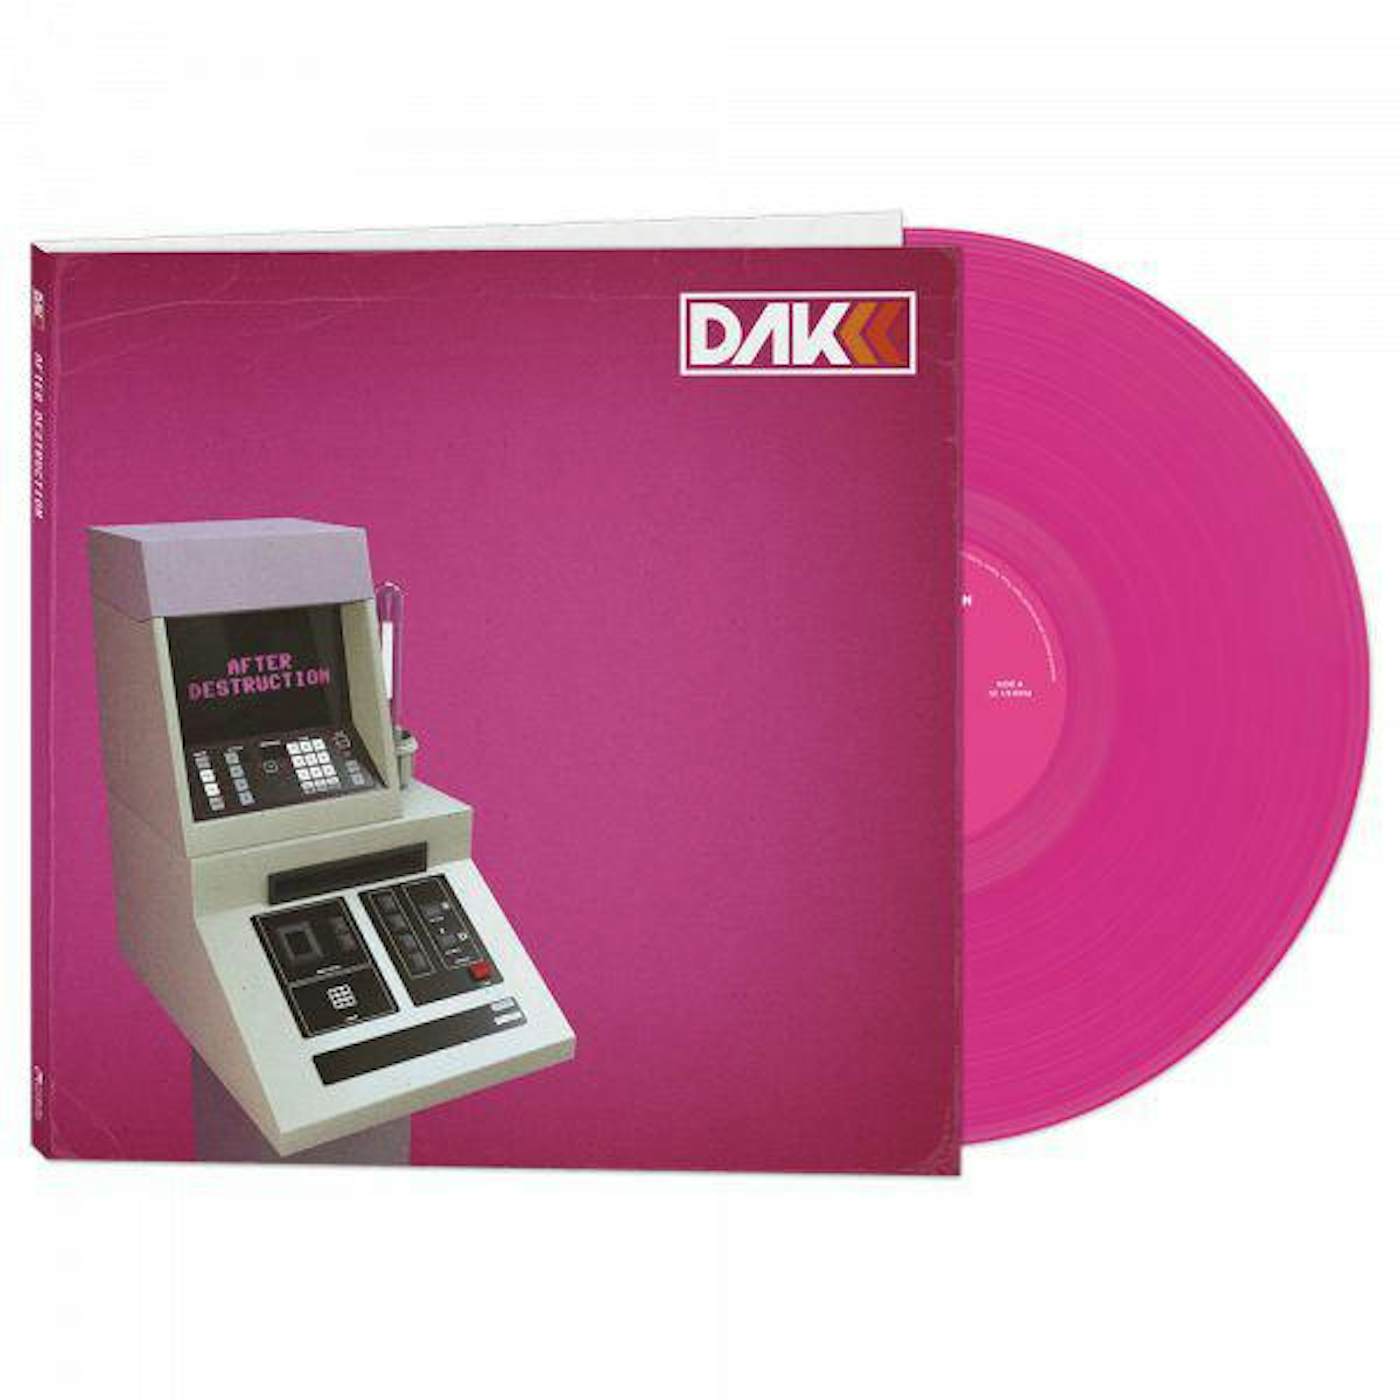 Descartes A Kant Afer Destruction (Pink) Vinyl Record